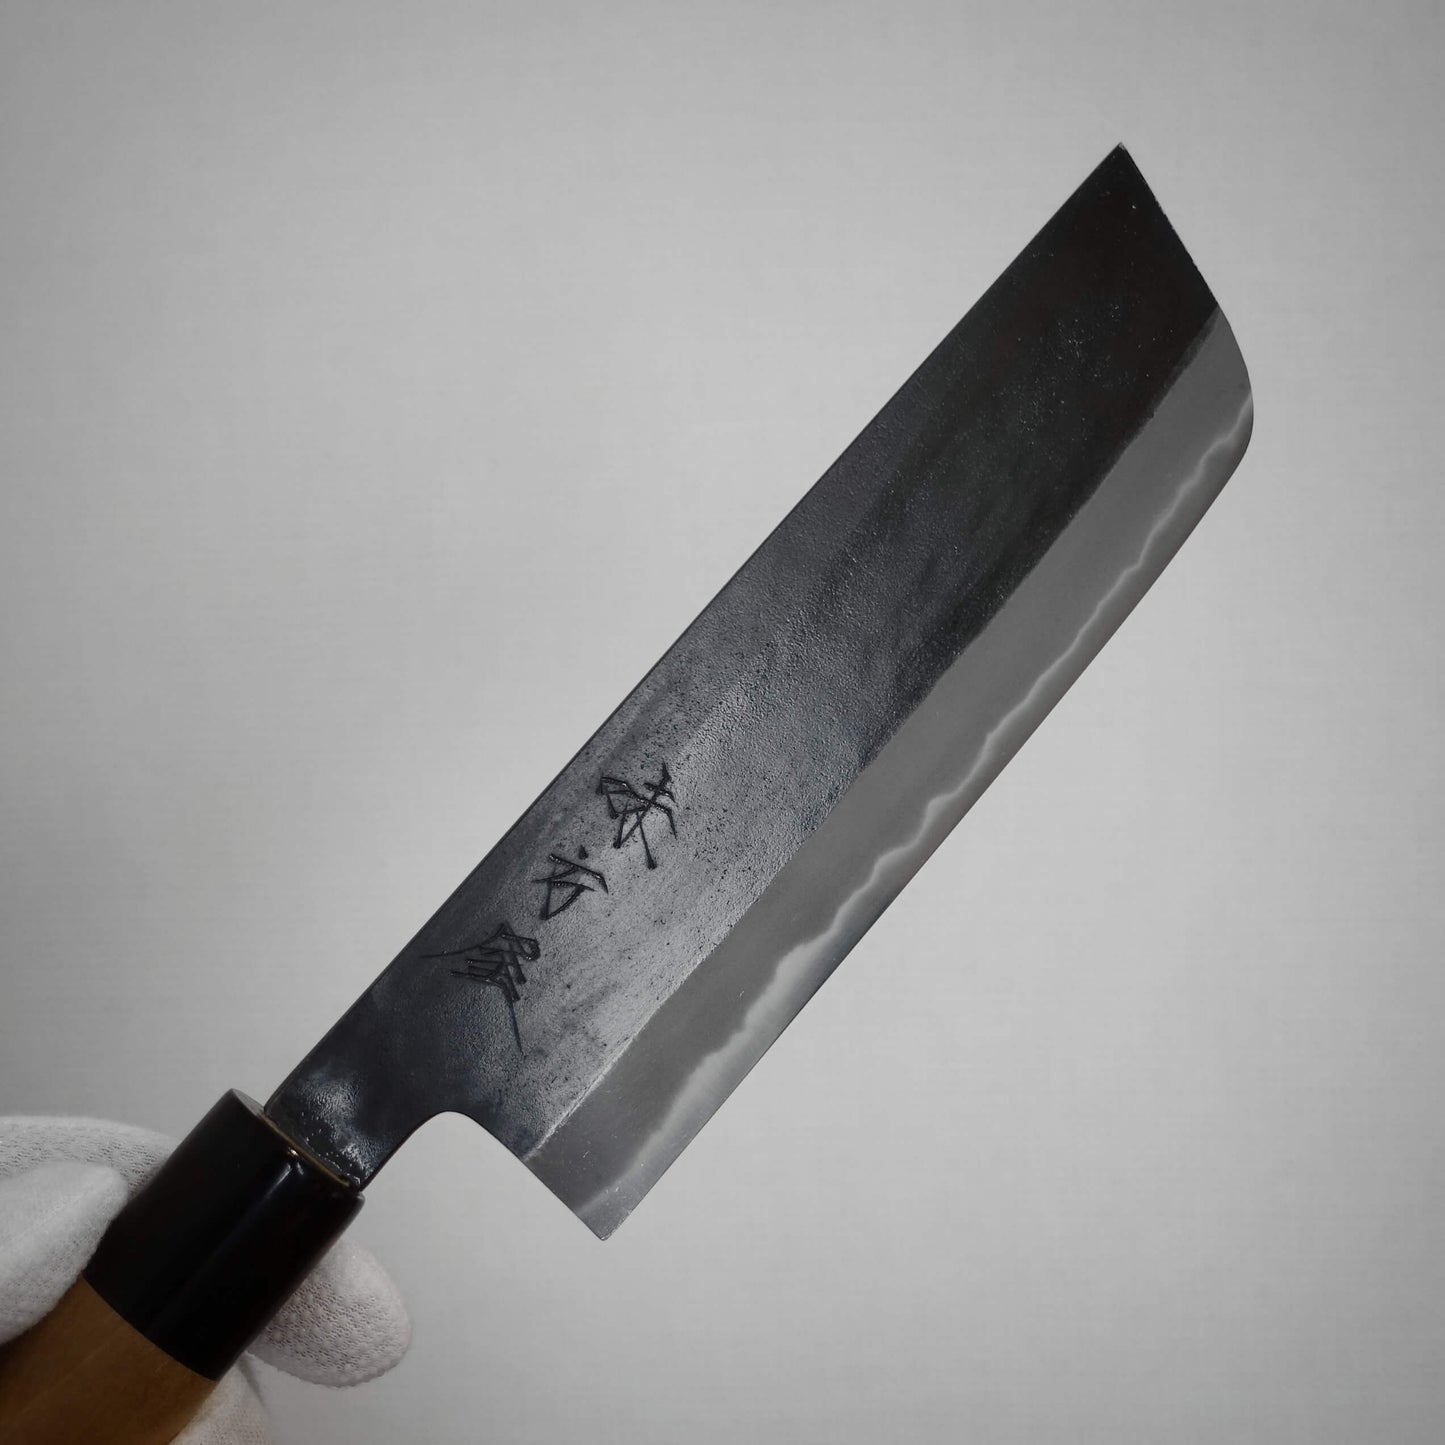 Hinoura kurouchi shirogami #2 165mm nakiri - Zahocho Japanese Knives